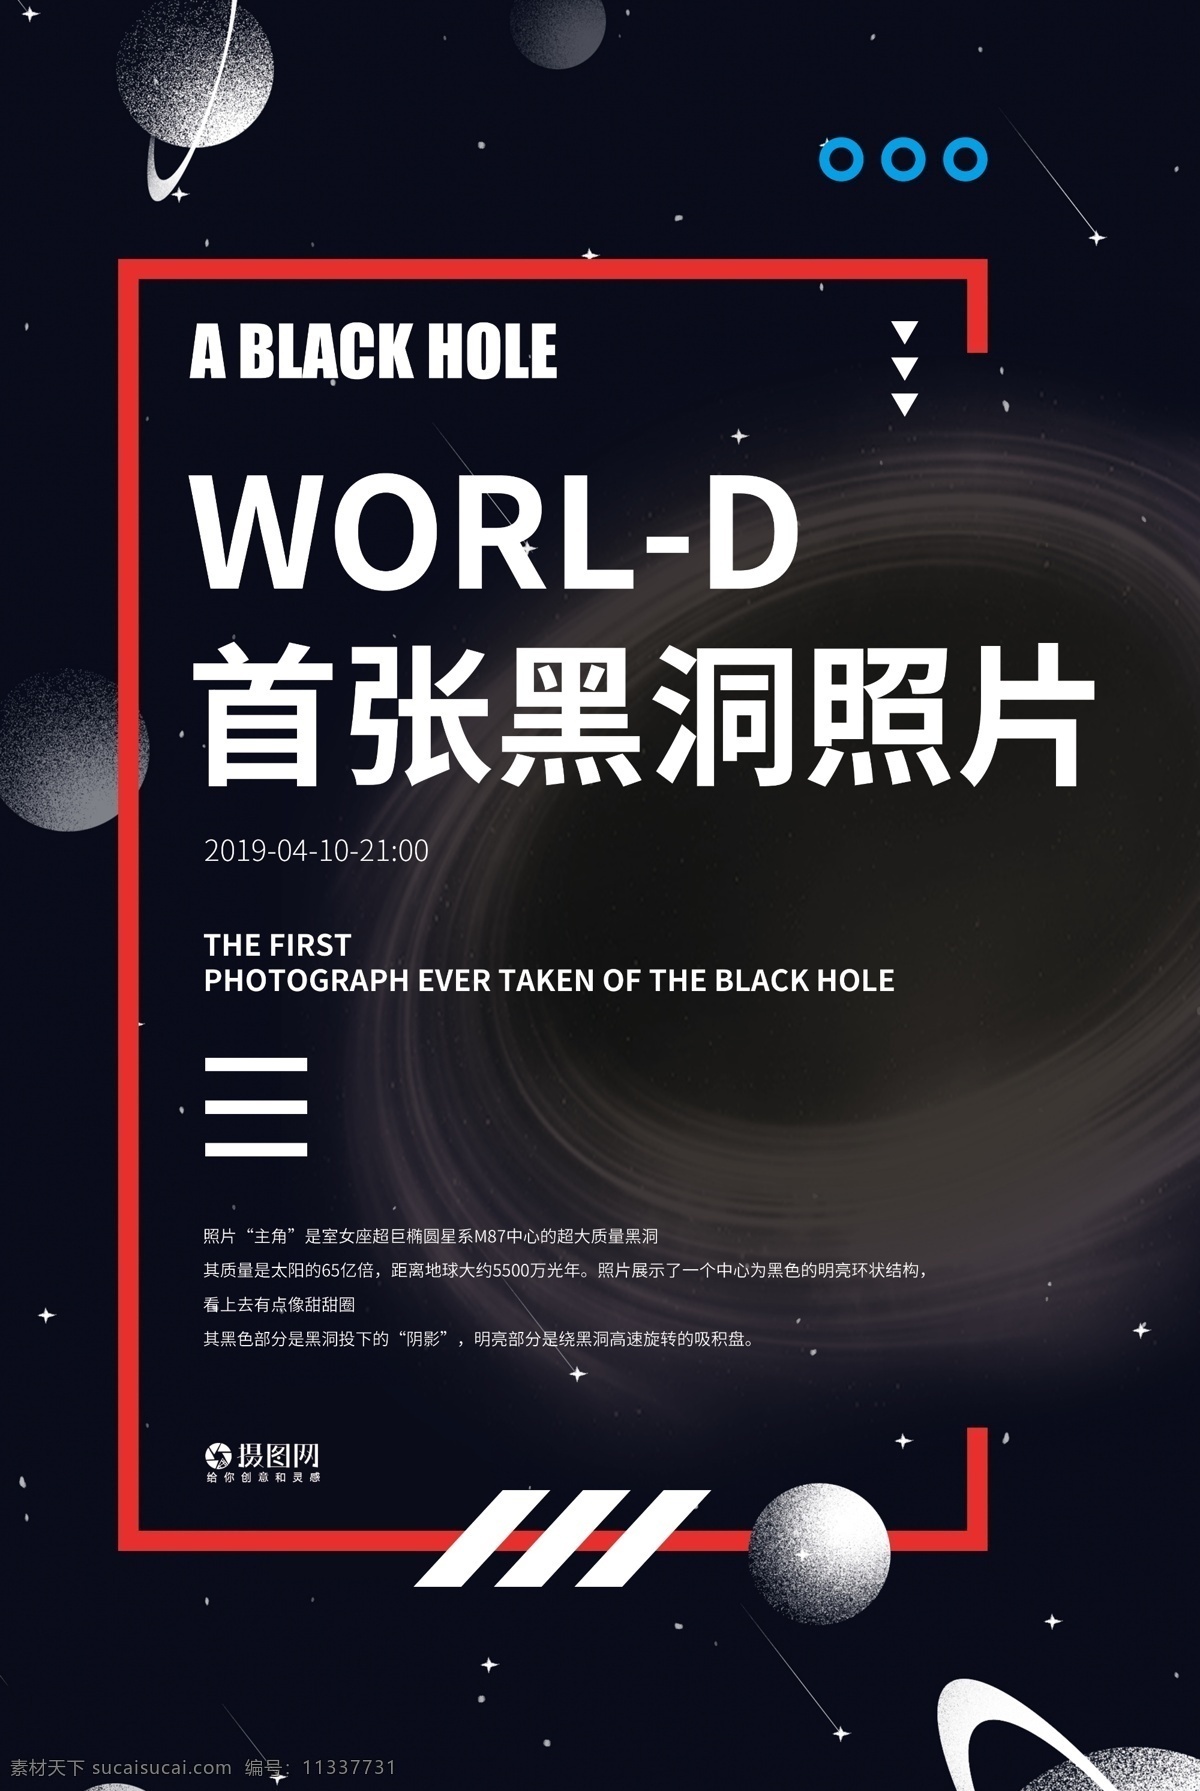 世界 首 张 黑洞 照片 宣传海报 科技 黑洞照片 世界首张照片 宇宙 星空 探索宇宙 探索黑洞 探索